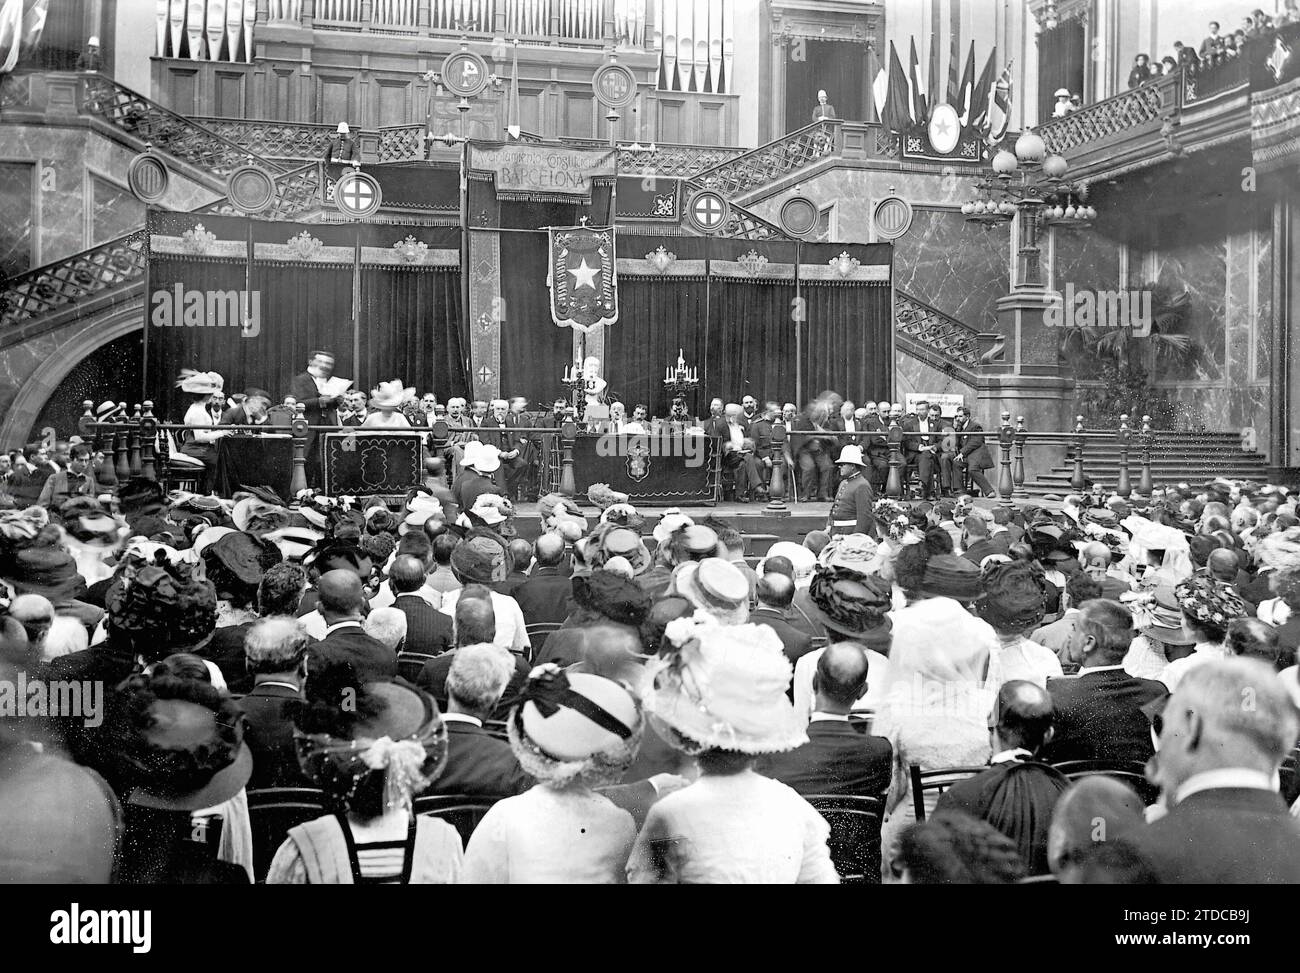 09/06/1909. Der Esperanto-Kongress in Barcelona. Auftritt der Halle der Schönen Künste während der ersten Kongresssitzung. Quelle: Album/Archivo ABC Stockfoto